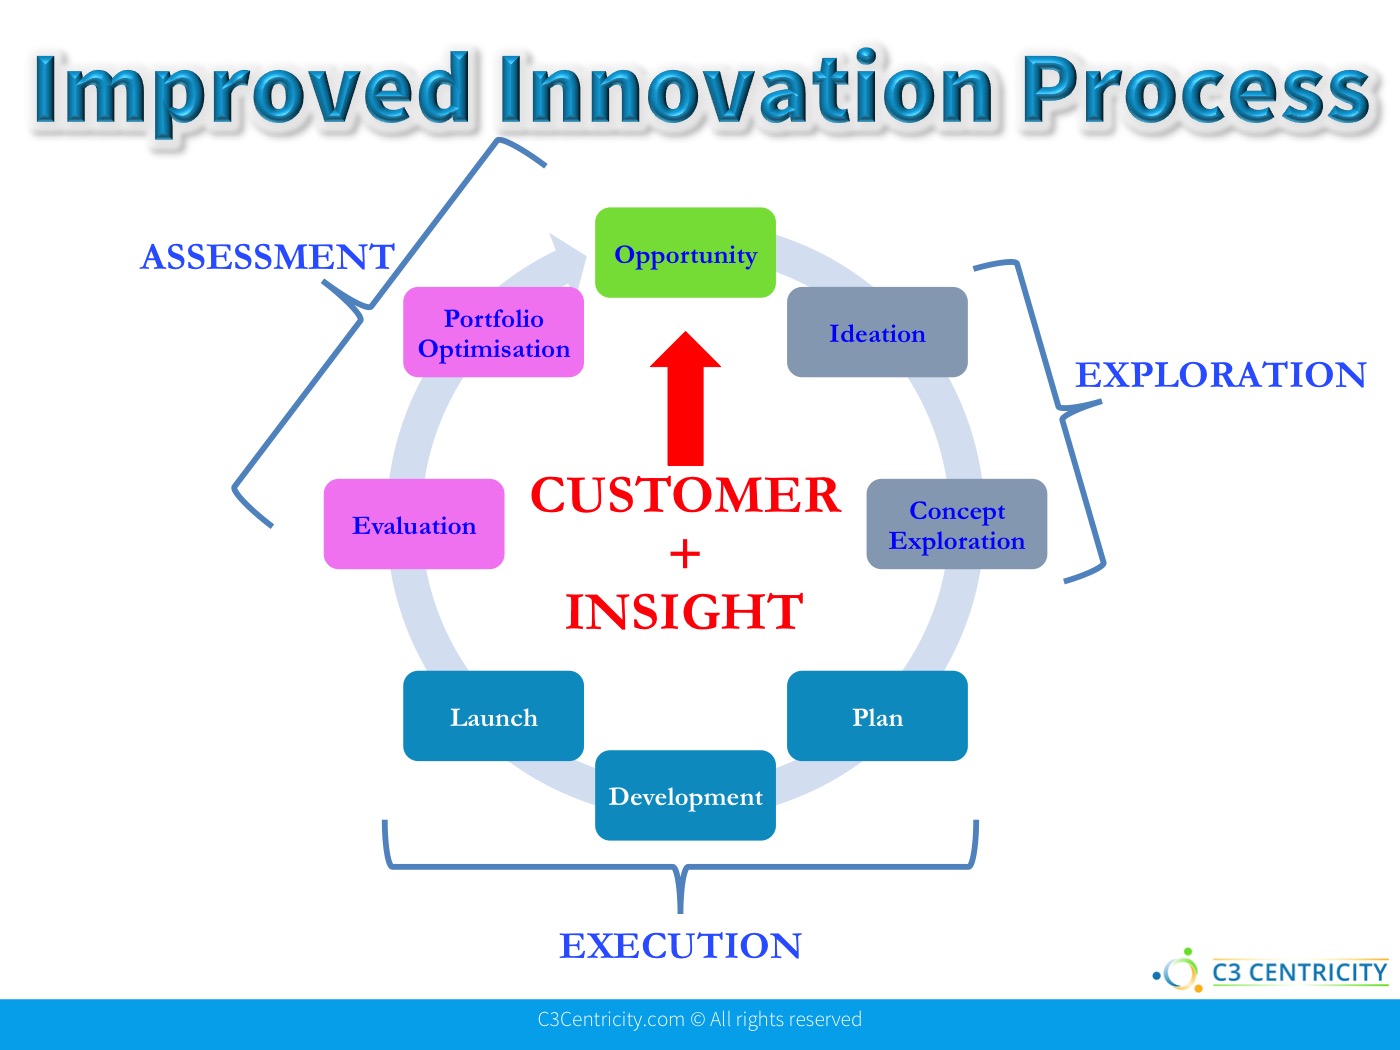 C3Centricity Innovation Process 2016